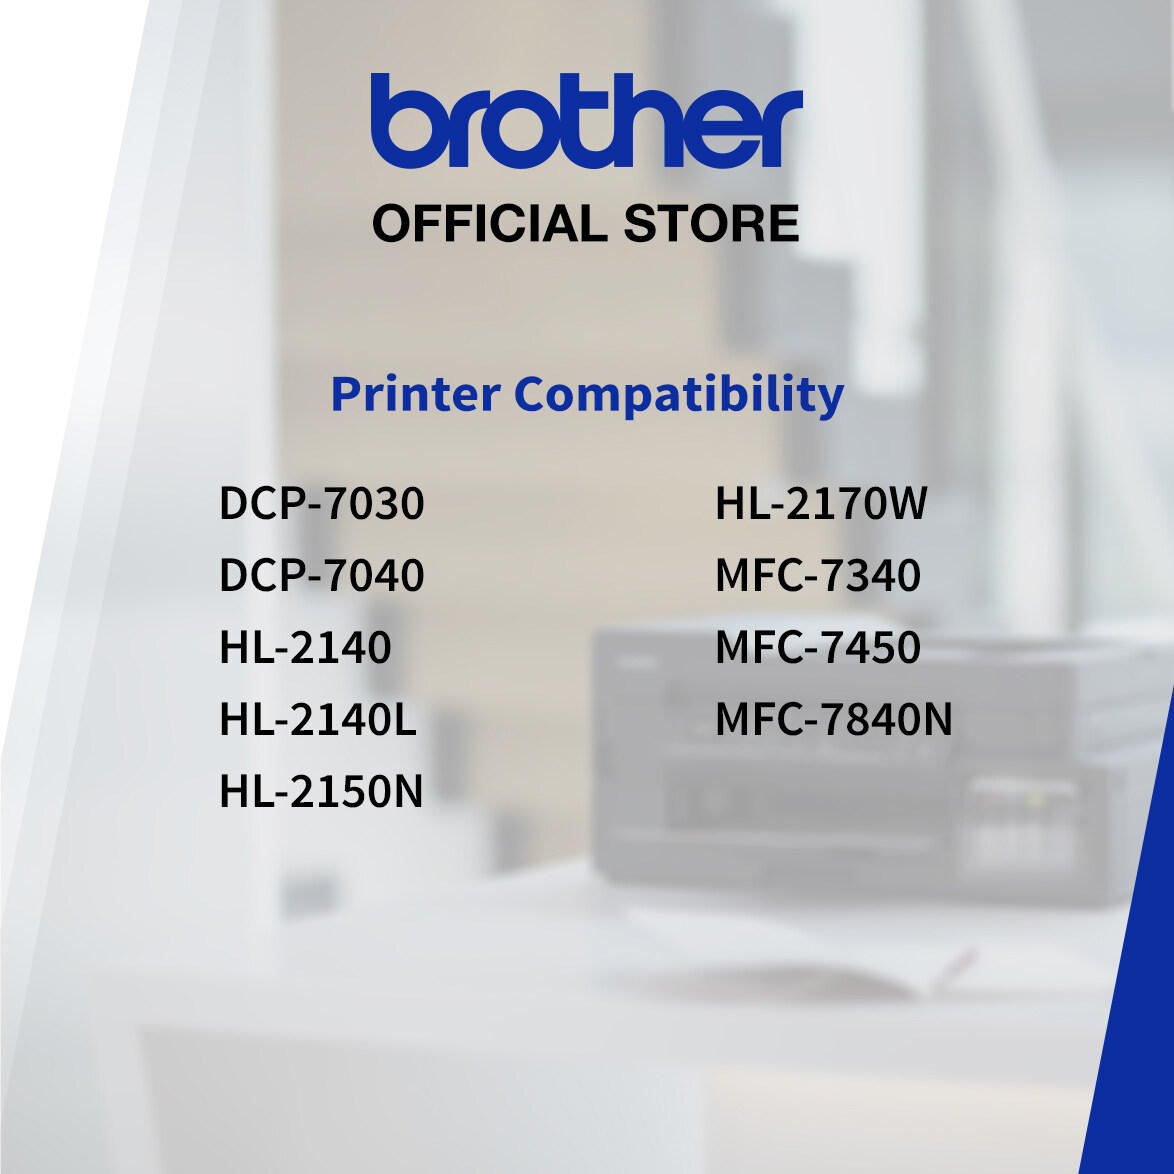 Brother TN-2150 Original Monochrome Toner Cartridge, Black, for HL-2140L, HL-2150N, HL-2170W, DCP-7030, DCP-7040, MFC-7340, MFC-7450, MFC-7840N